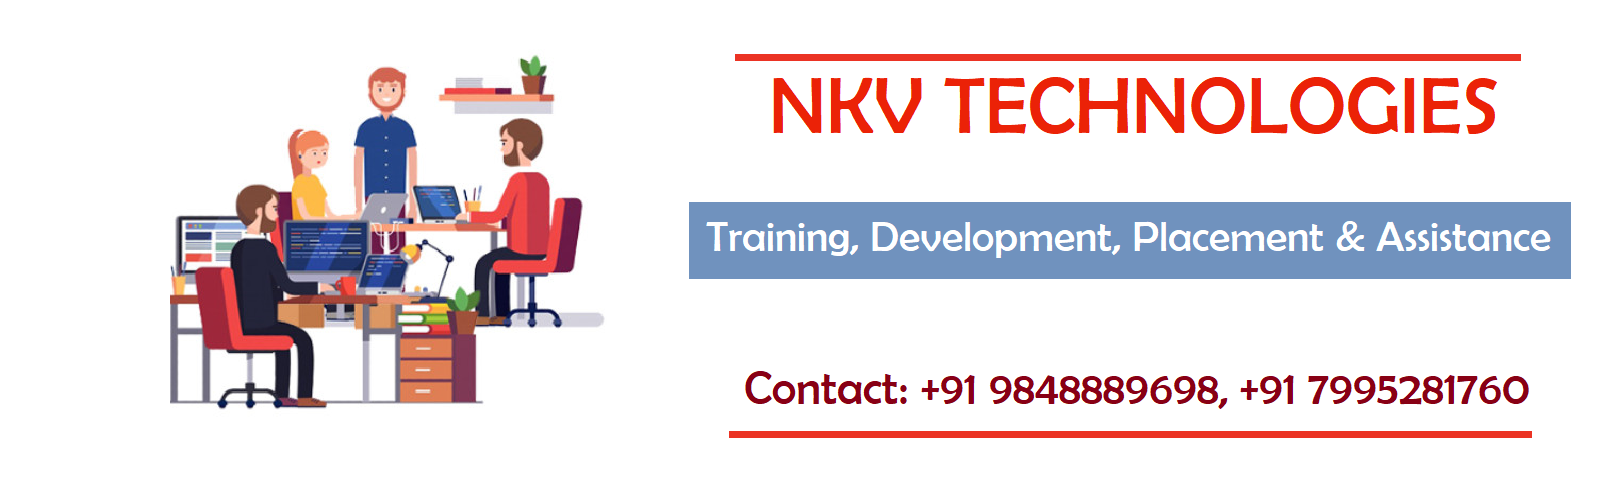 NKV Technologies